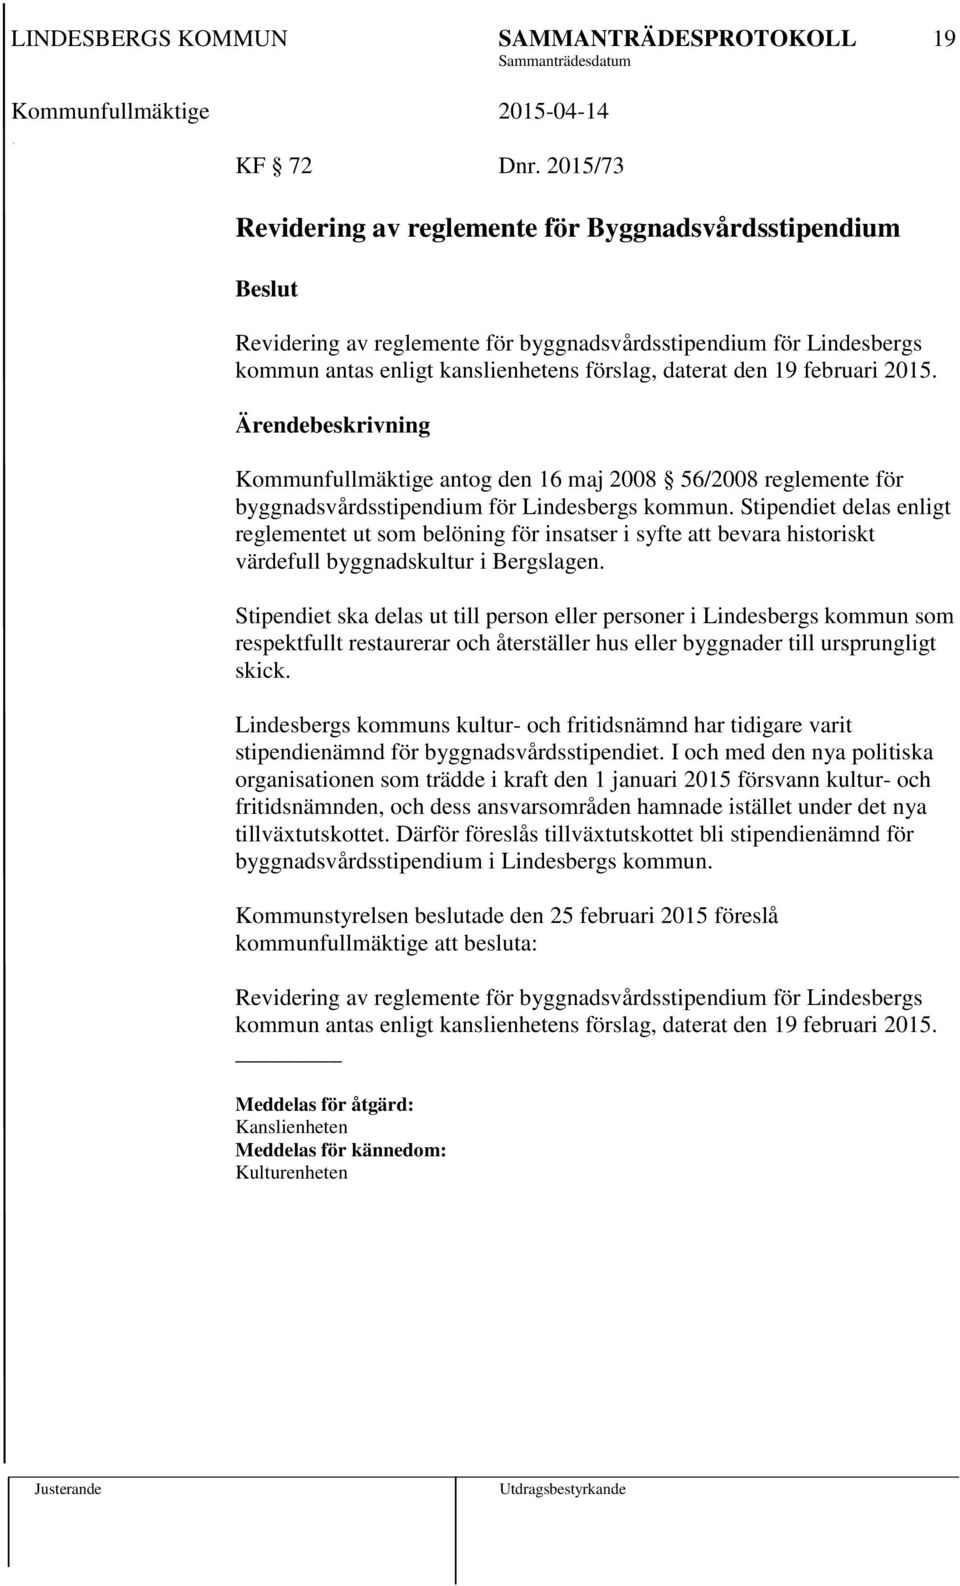 2015. Kommunfullmäktige antog den 16 maj 2008 56/2008 reglemente för byggnadsvårdsstipendium för Lindesbergs kommun.